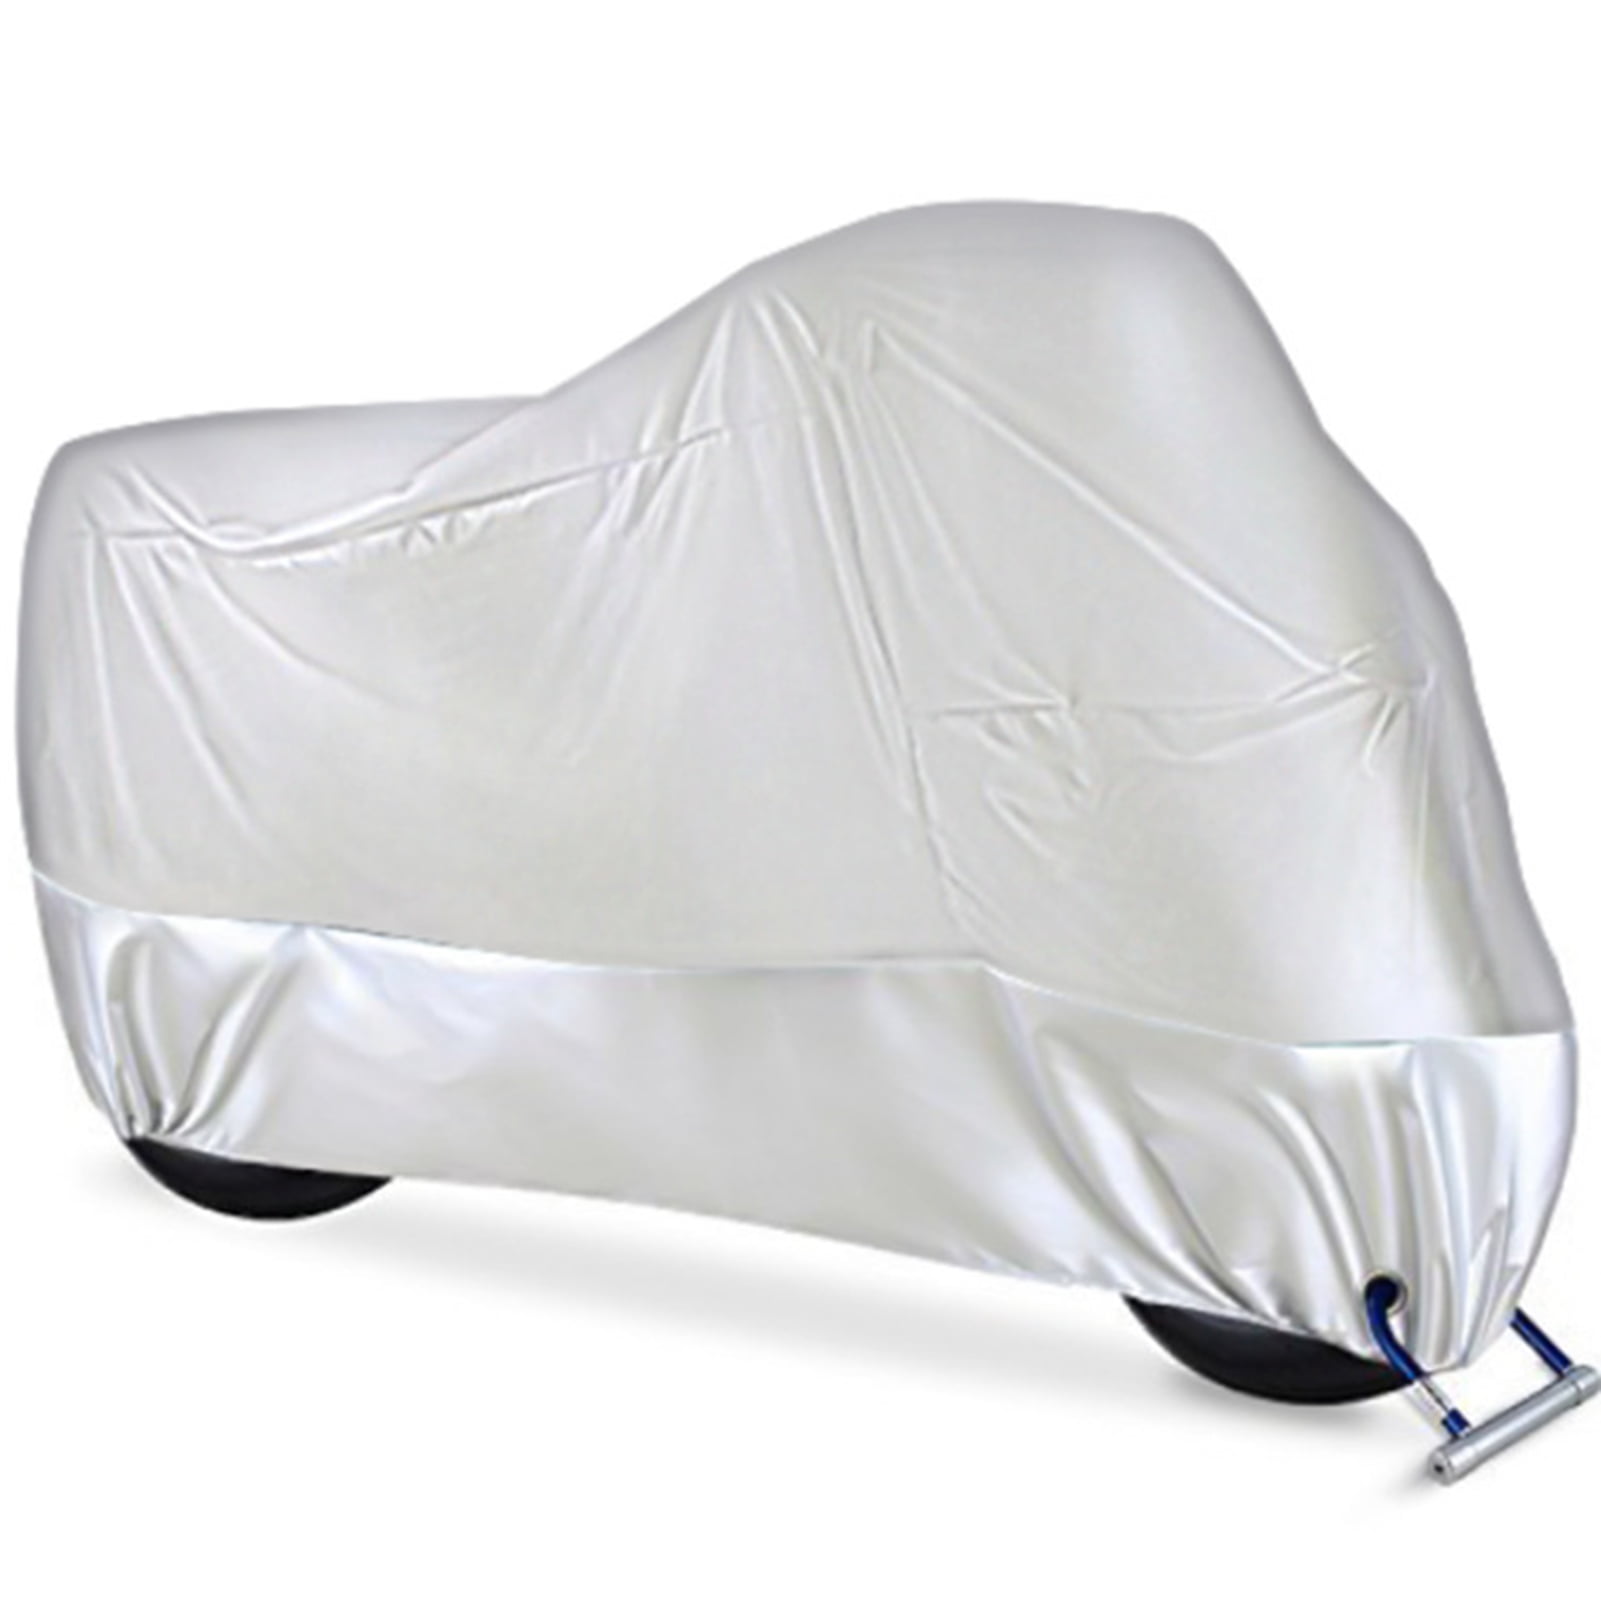 Motorcycle Seat Cover Outdoor Waterproof Rain Dust UV Protector Practical Black 